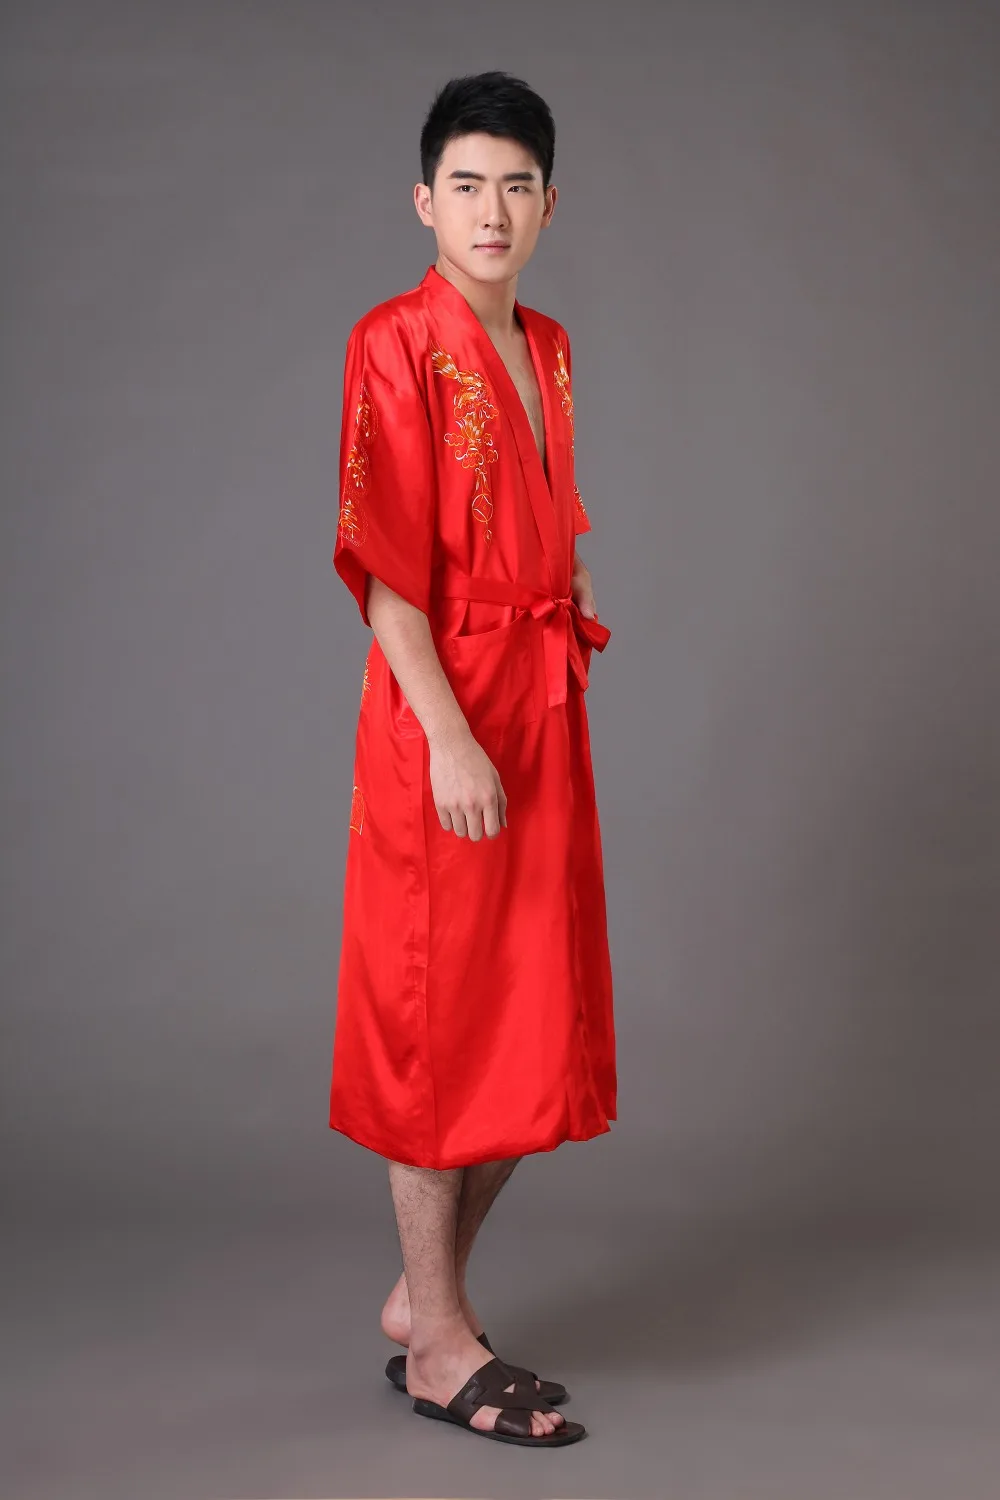 Плюс размер XXXL красное мужское платье с драконами китайское мужское шелковое атласное ночное белье халат традиционное кимоно с вышивкой юката платье MR007